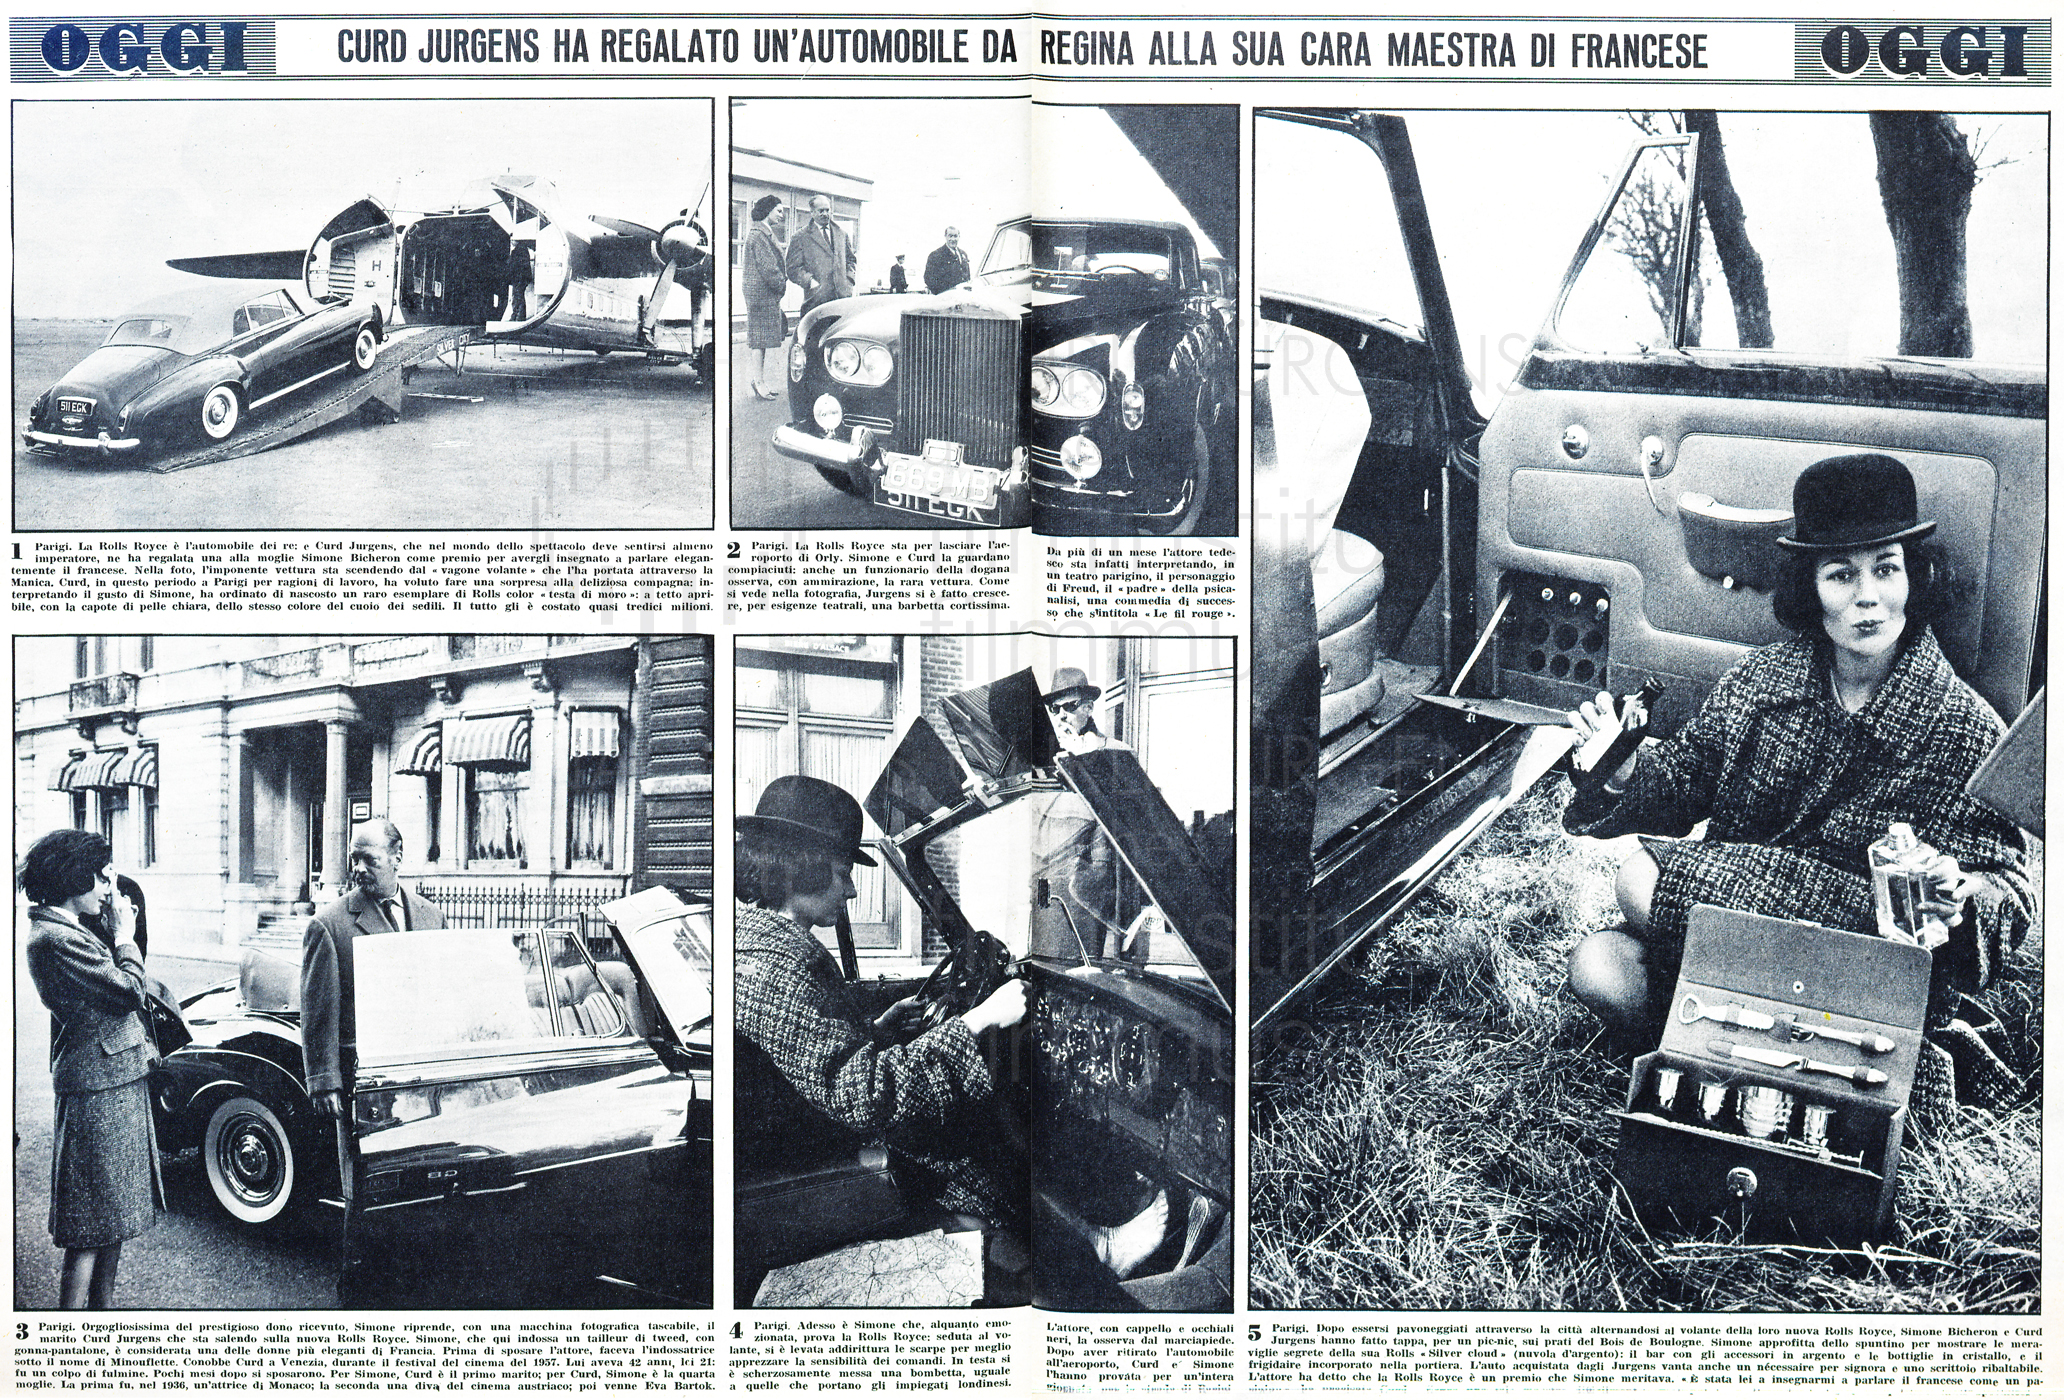 Oggi Illustrato: „Curd Jurgens ha regalato un'automobile da regina alla sua cara maestra di francese“, Nr. 14, 1963